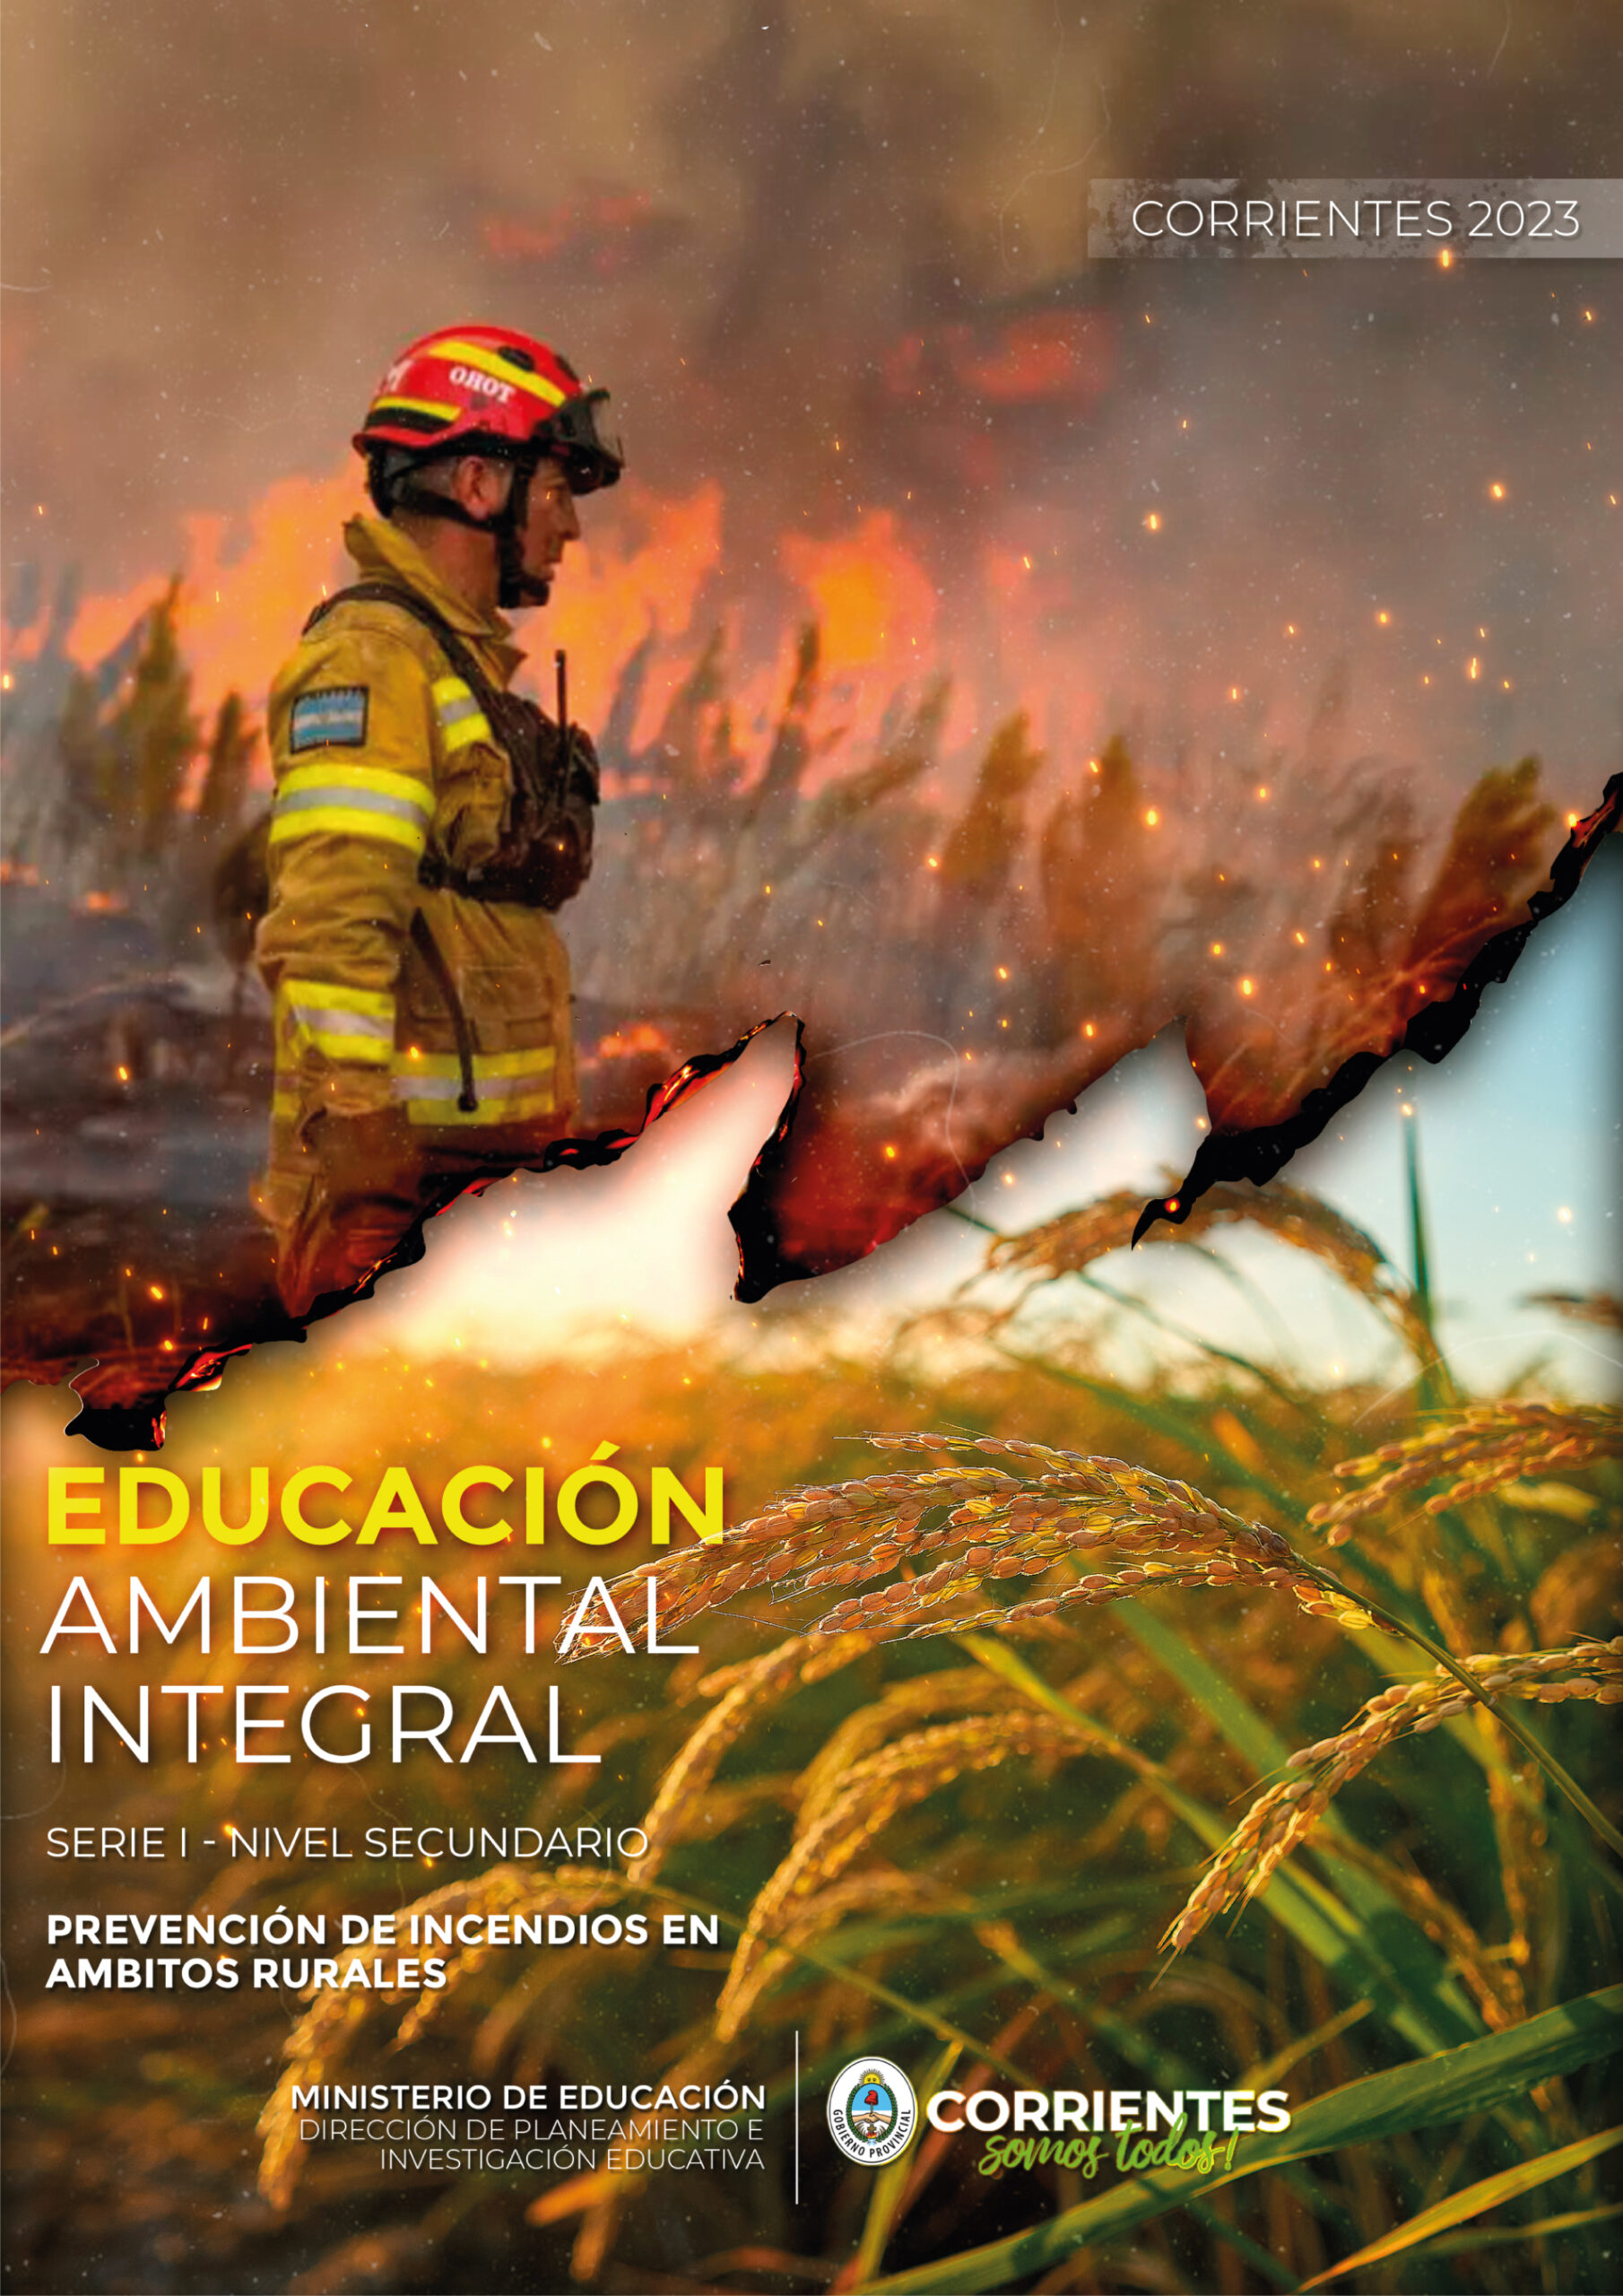 Alto al Fuego colabora para brindar en colegios secundarios “Educación Ambiental para la Prevención de Incendios”